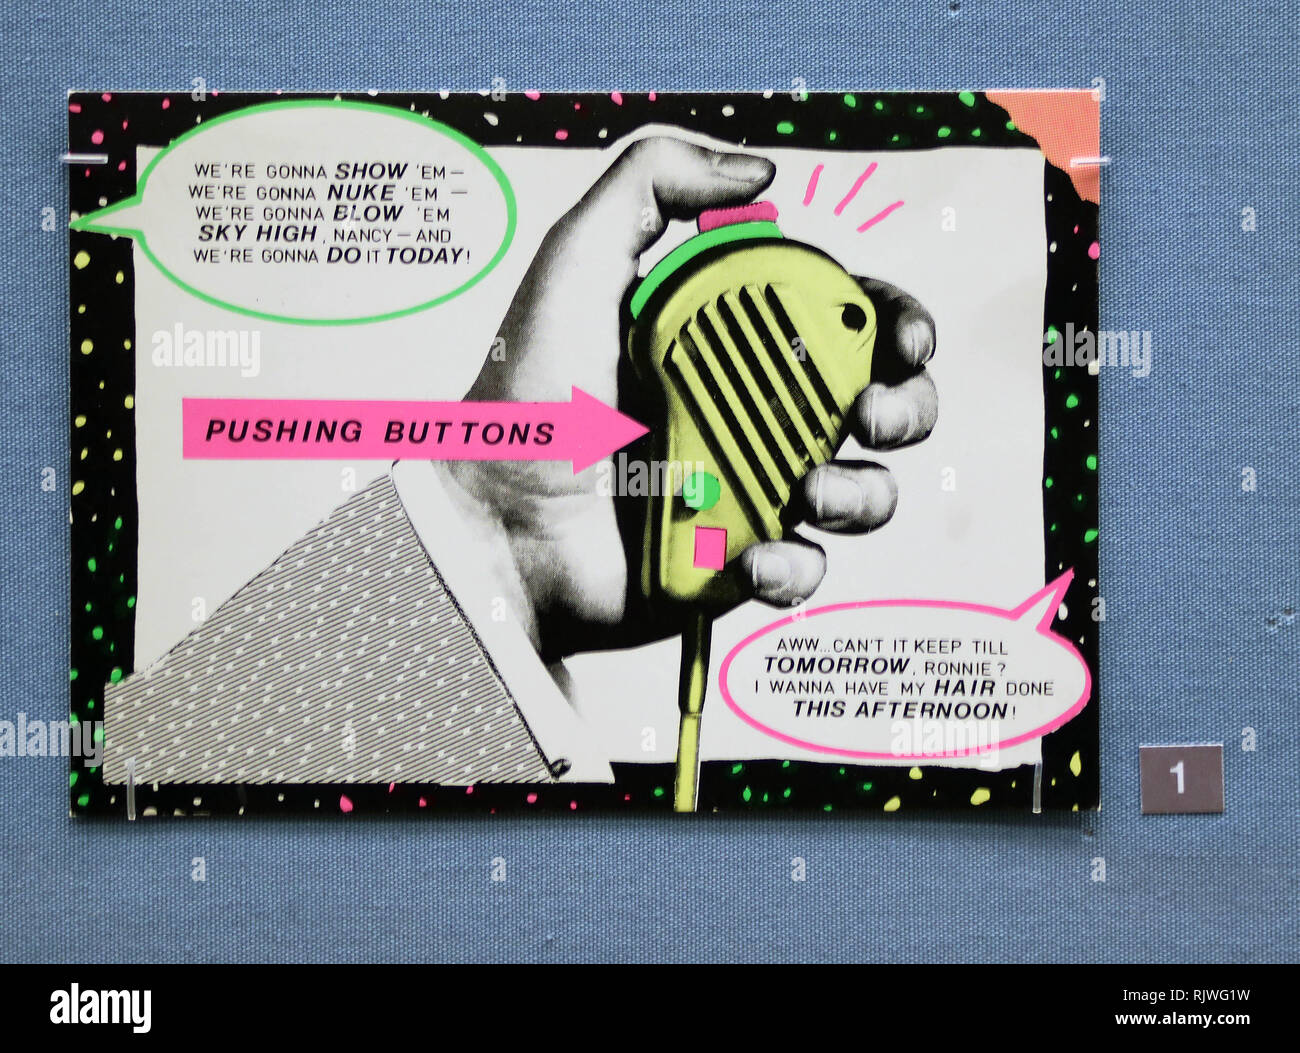 Bild zeigt: politische und feministische Postkarten Funktion stark British Museum - Ausstellung der Postkarte Kunstwerke mit Andy Warhol, Jeremy Deller, Stockfoto